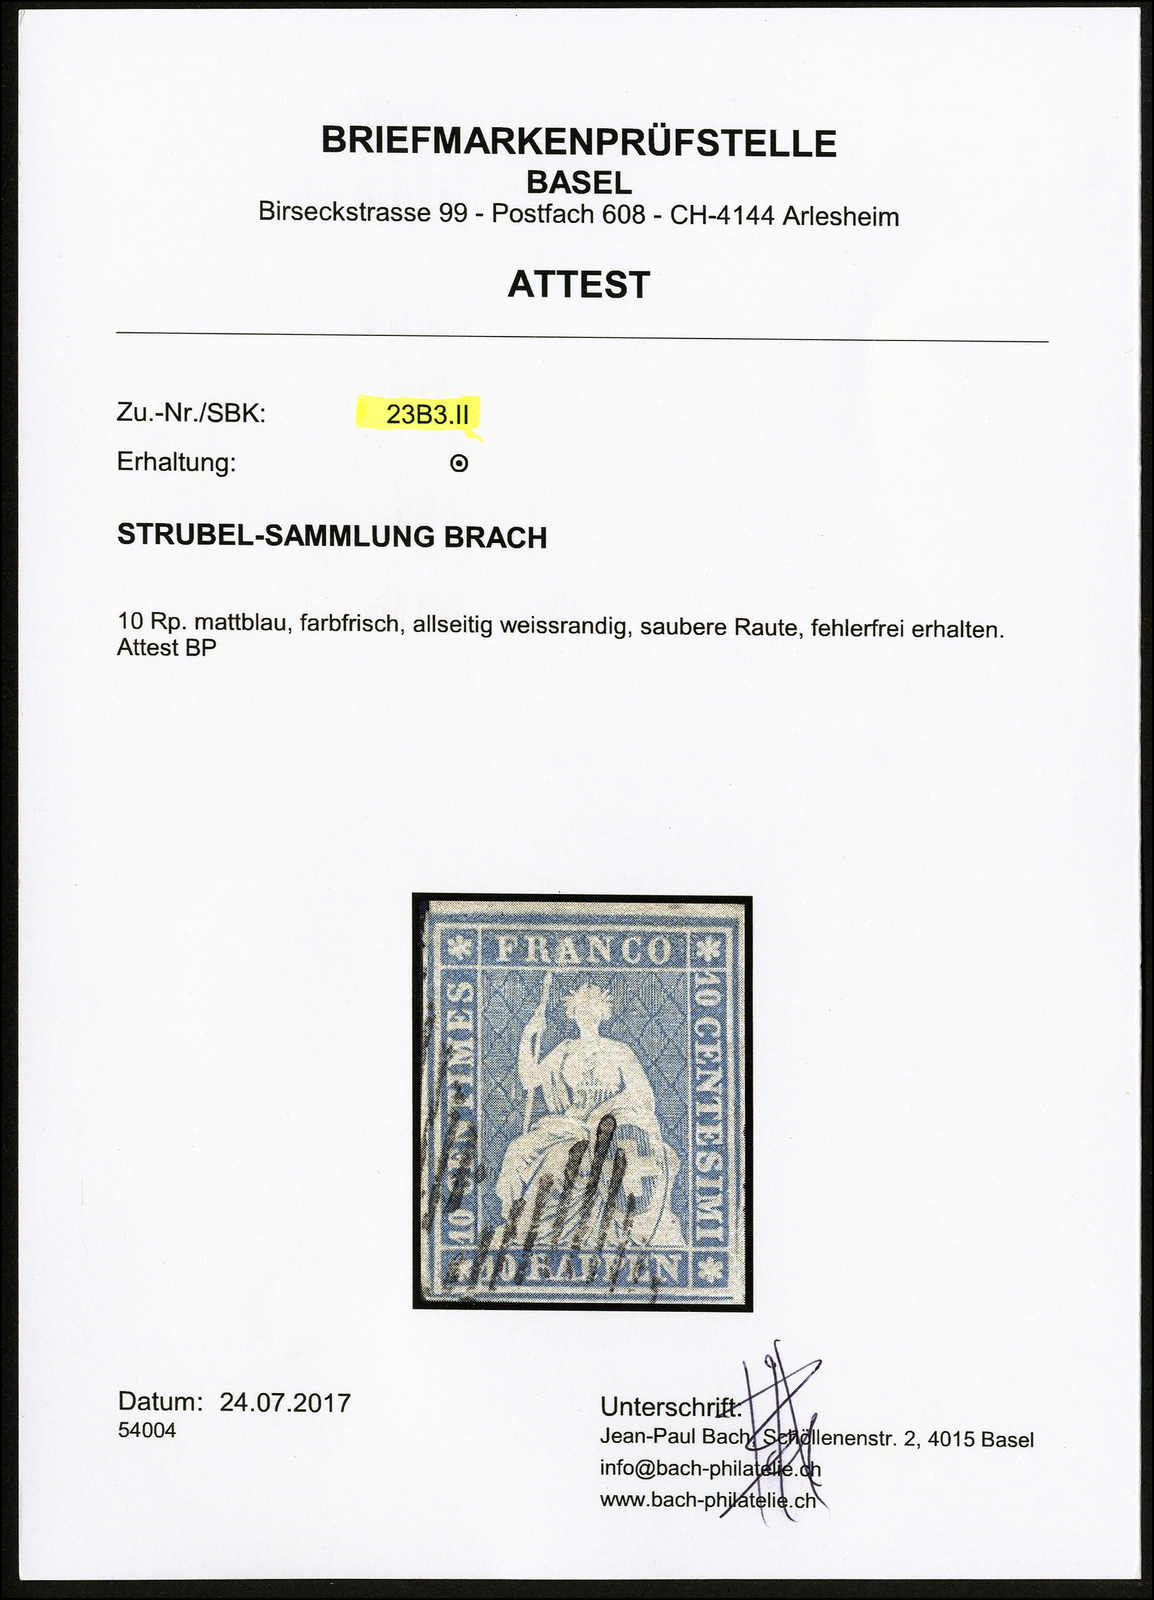 Lot 58 - sammlungen und posten sammlungen und posten altschweiz -  Rolli Auctions Auction #68 Day 1